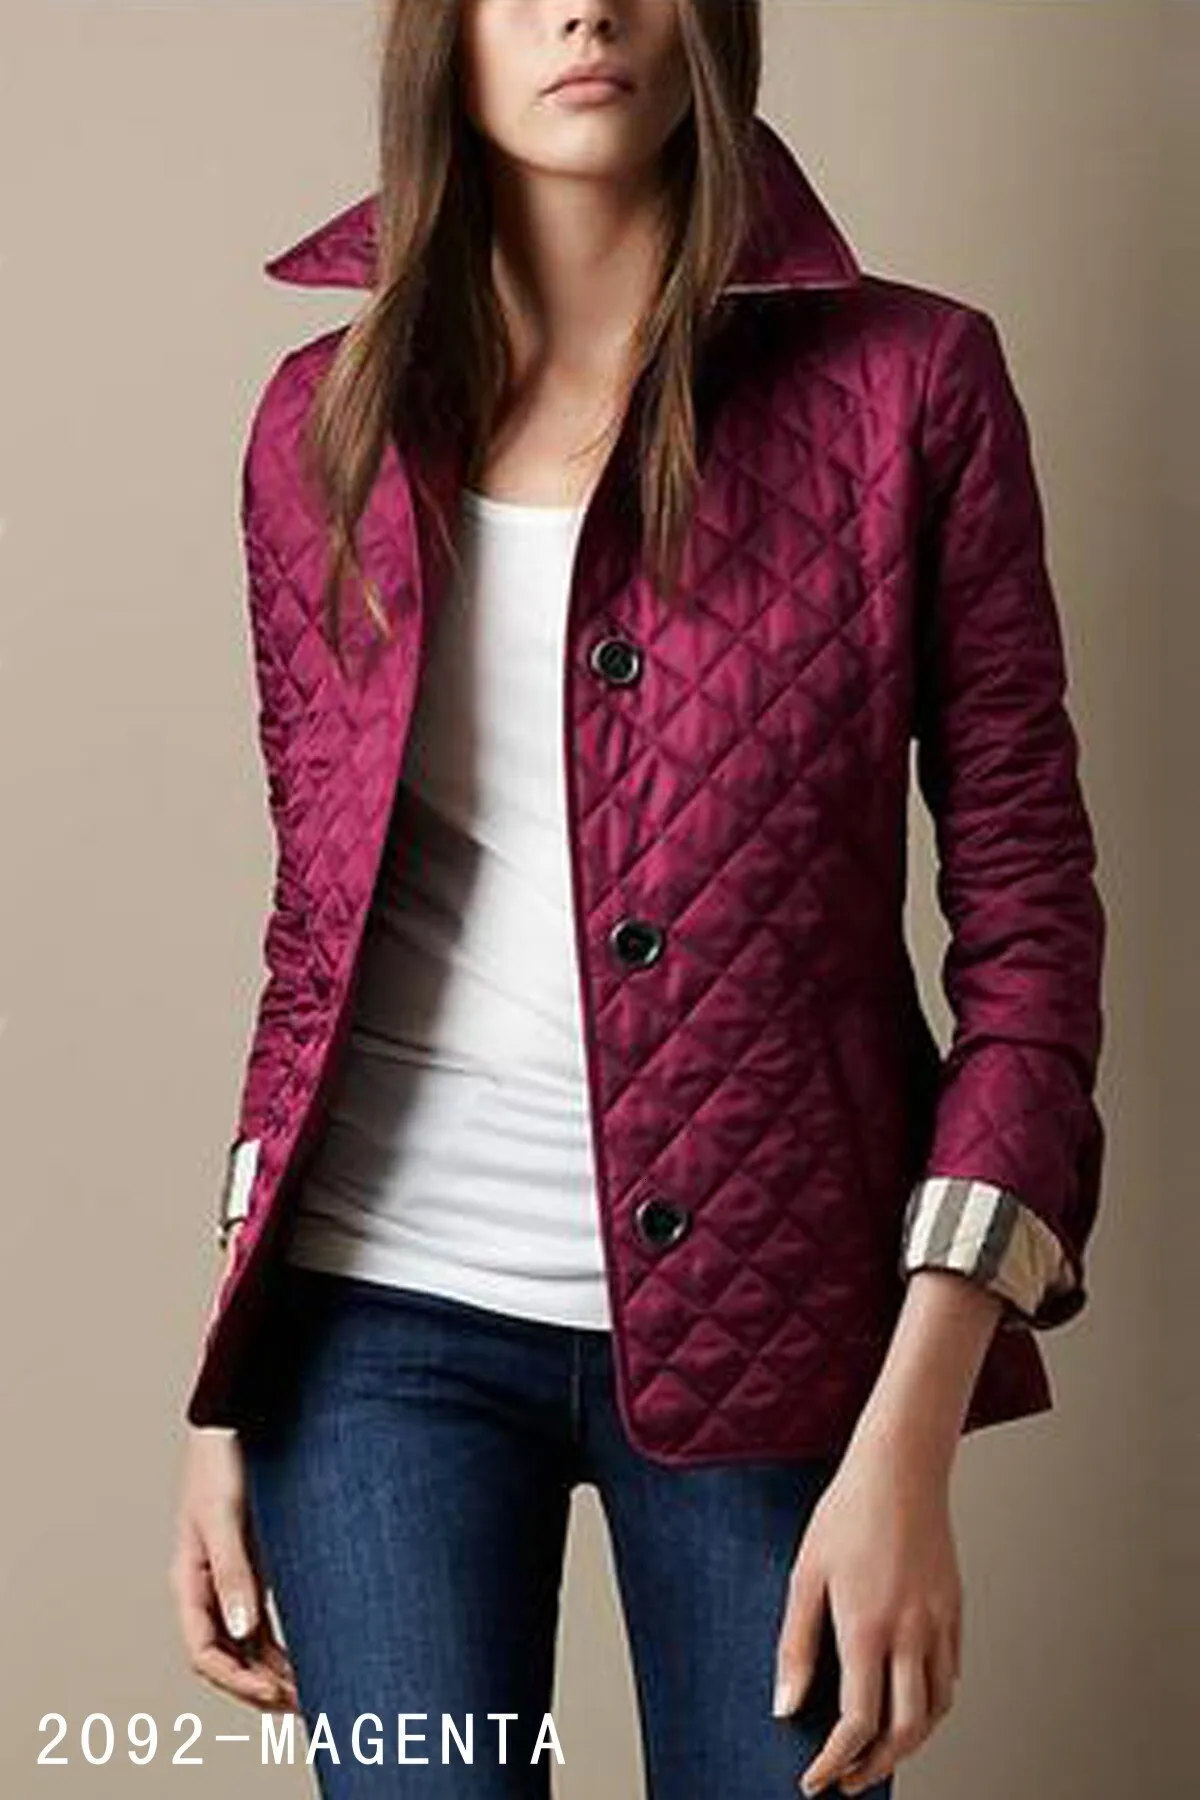 Женские куртки осенние зимние классические клетчатые топ -дизайн бренда.